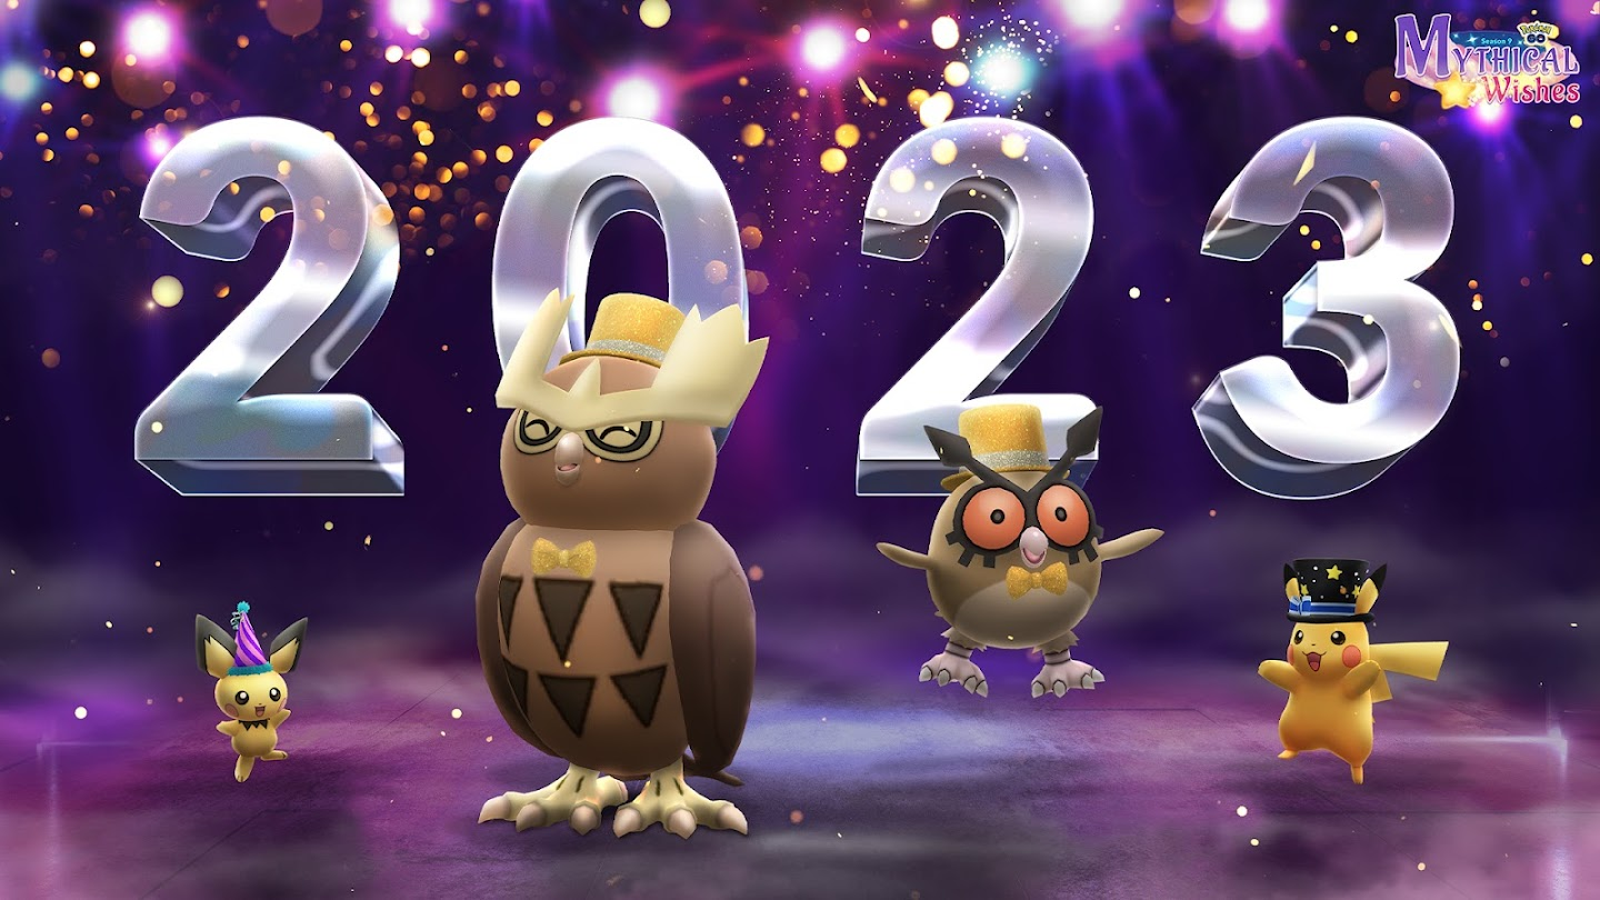 Ho-oh retorna ao Pokémon GO em março de 2023